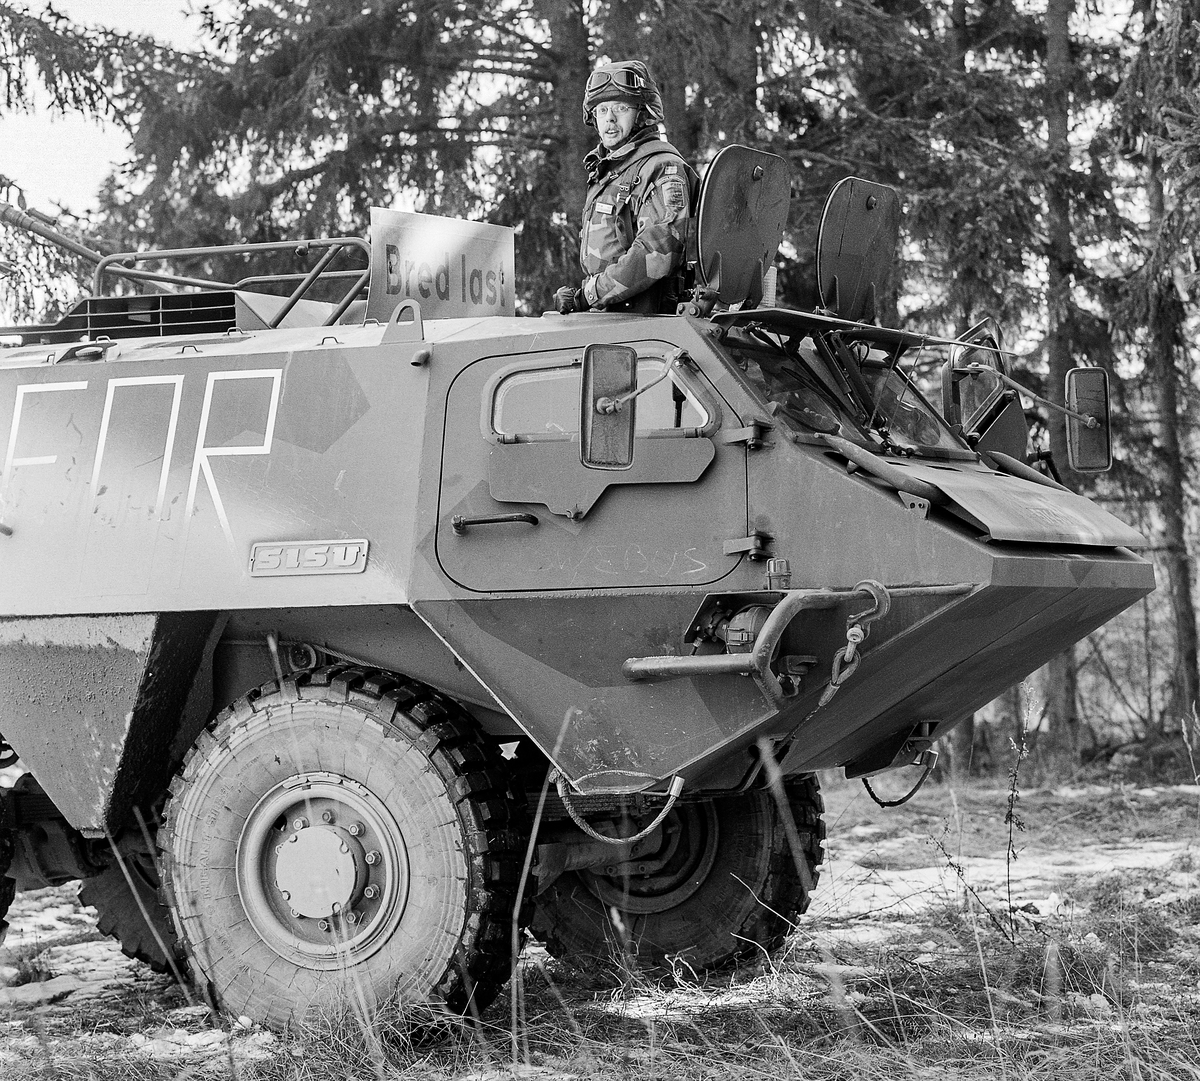 En finsk SISU med lt Ola Erlandsson i tornet.

Pansarbilen tillverkas senare av Patria i Finland.